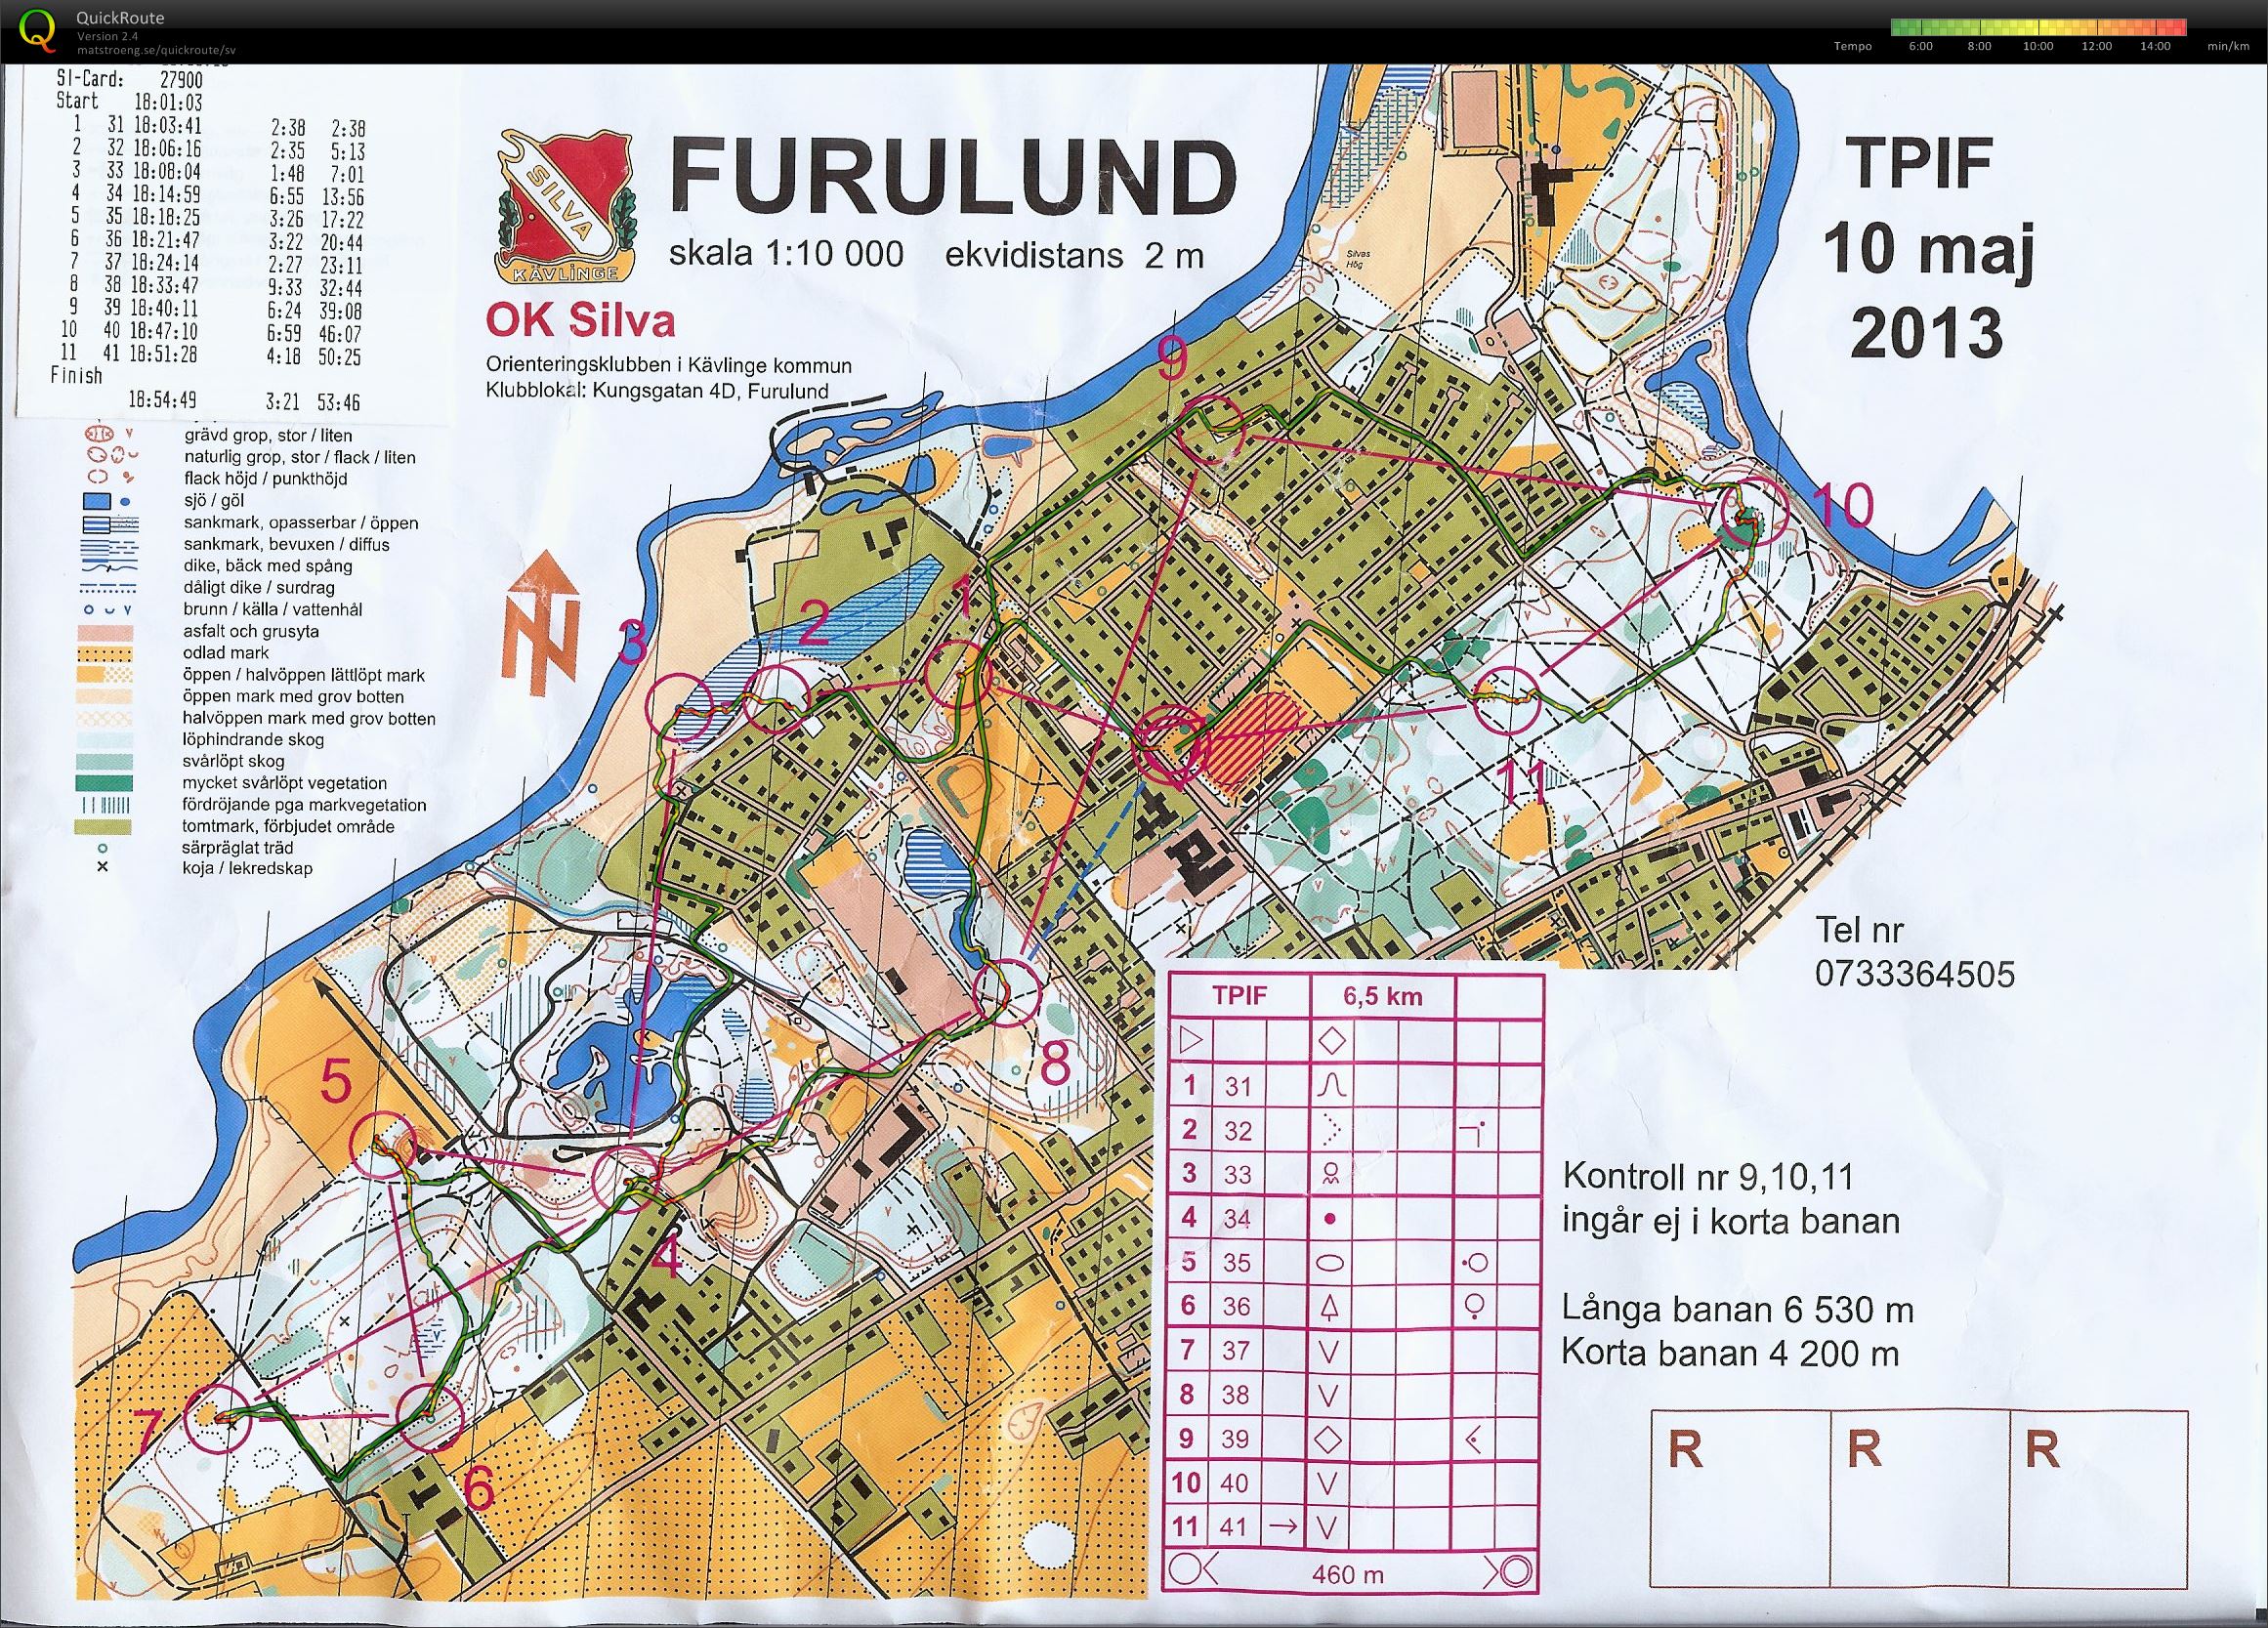 TPIF Furulund (2013-05-16)